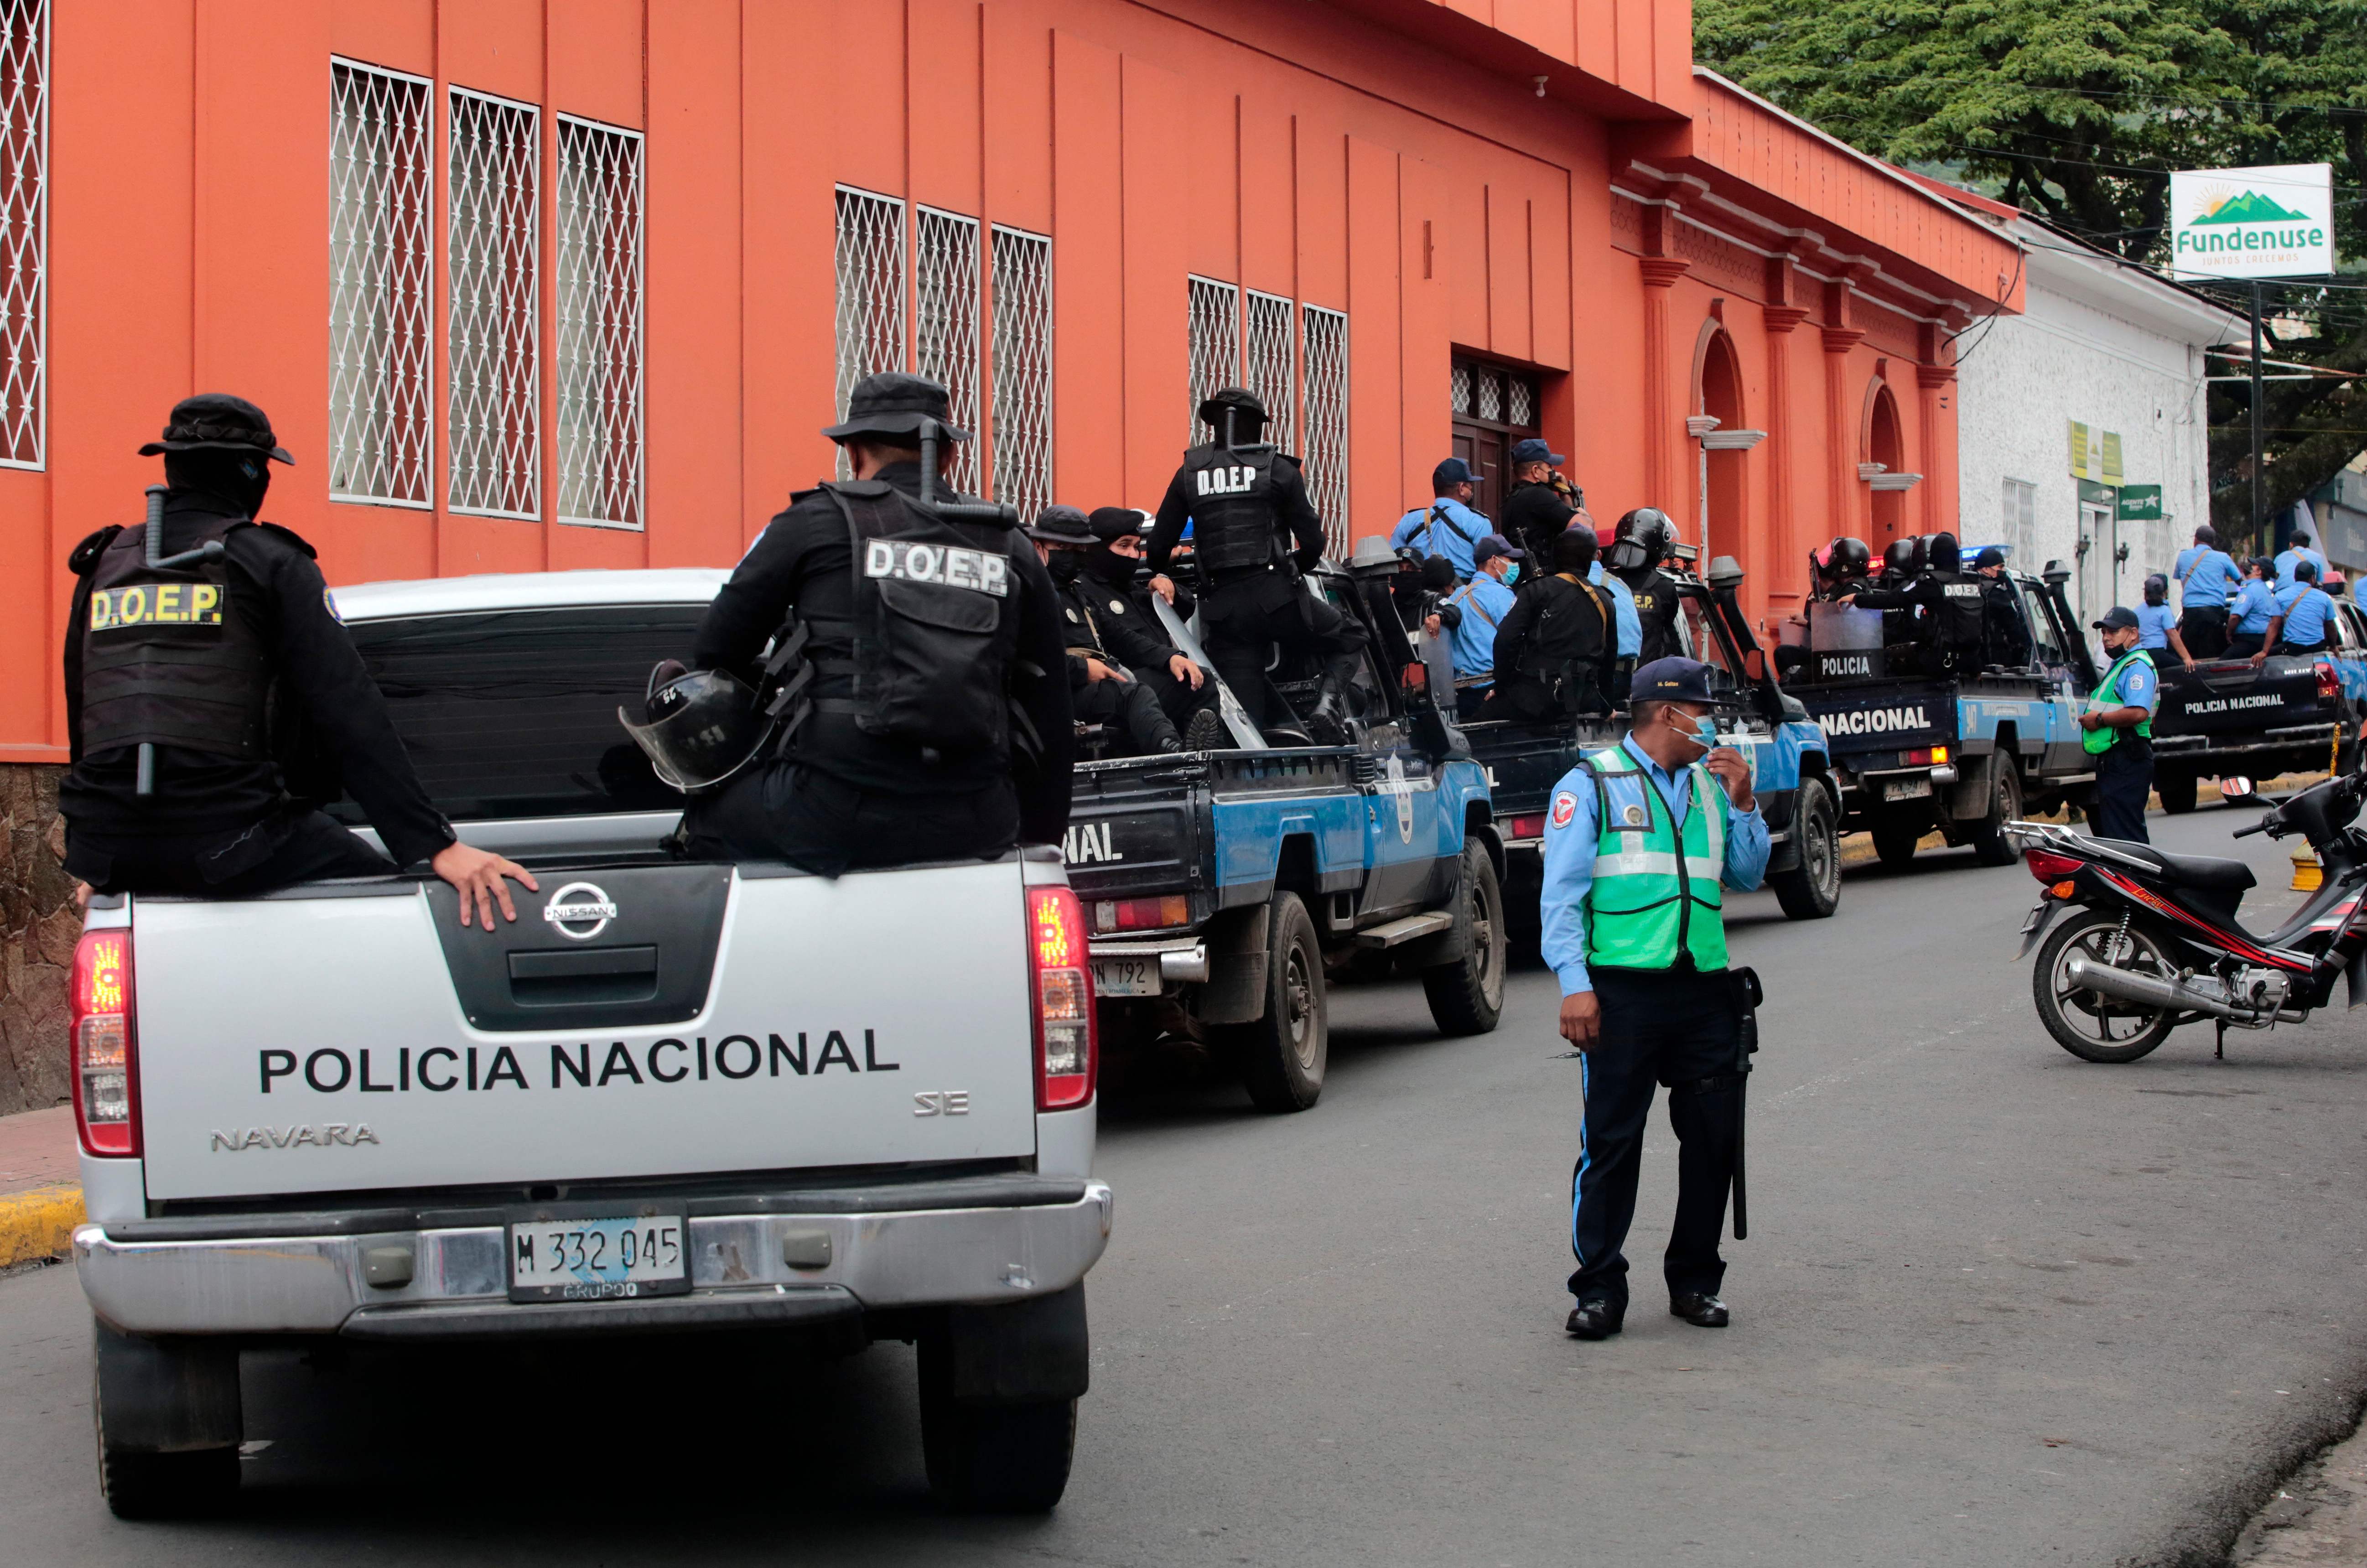 Por varios días previo a su arresto, la curia arzobispal donde estaba el obispo Rolando Álvarez, en Matagalpa, Nicaragua, estuvo sitiada por policía de Daniel Ortega. (Foto Prensa Libre: AFP)